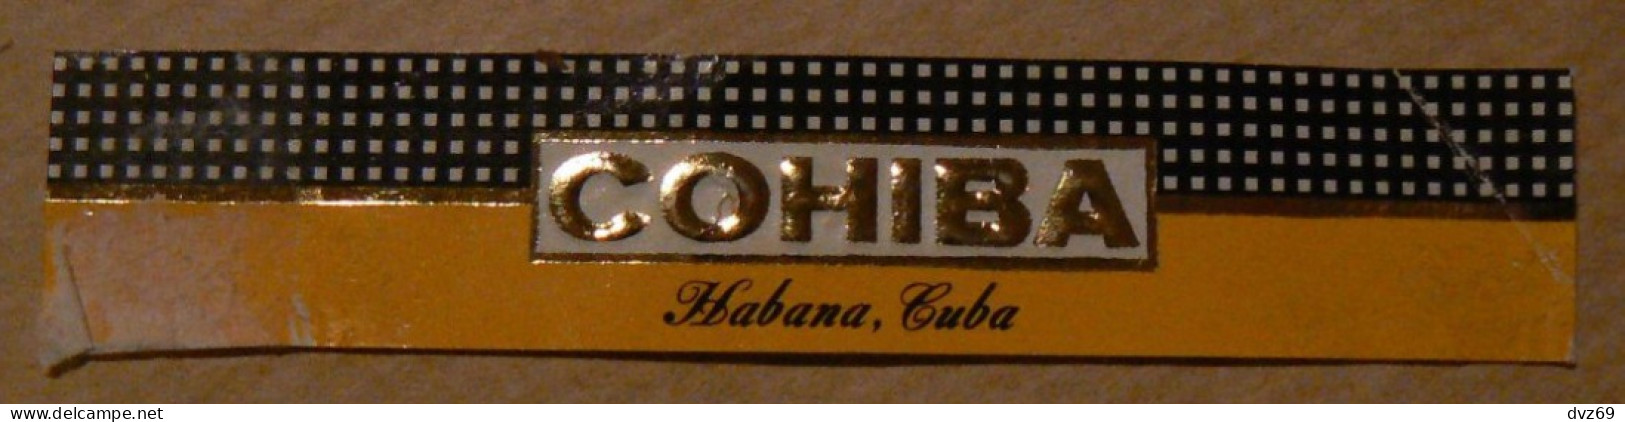 Bague De Cigare COHIBA, Habana, CUBA, TB - Bagues De Cigares